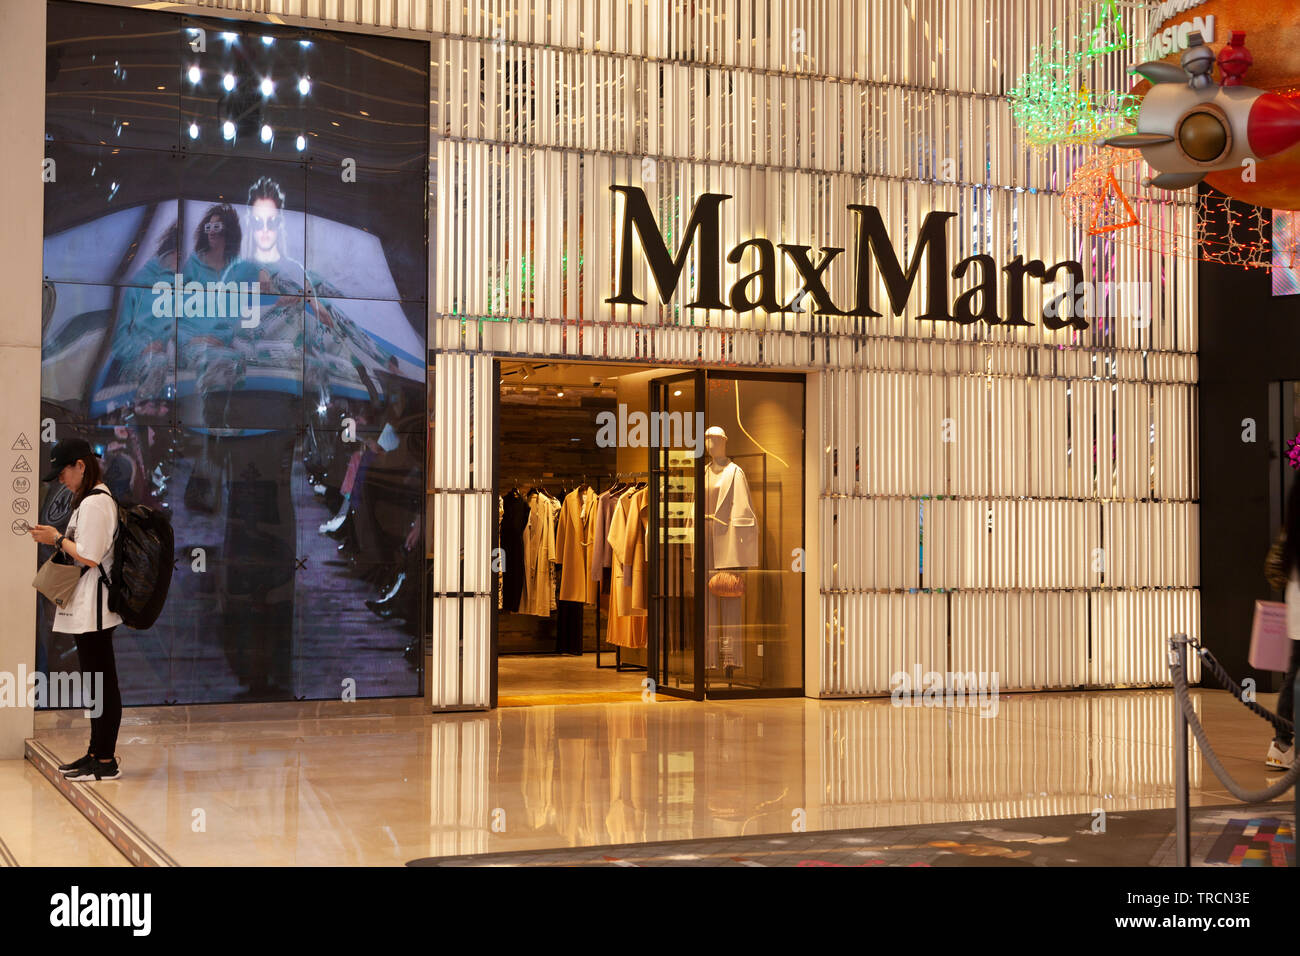 The Max Mara Store, Hong Kong, China Stock Photo